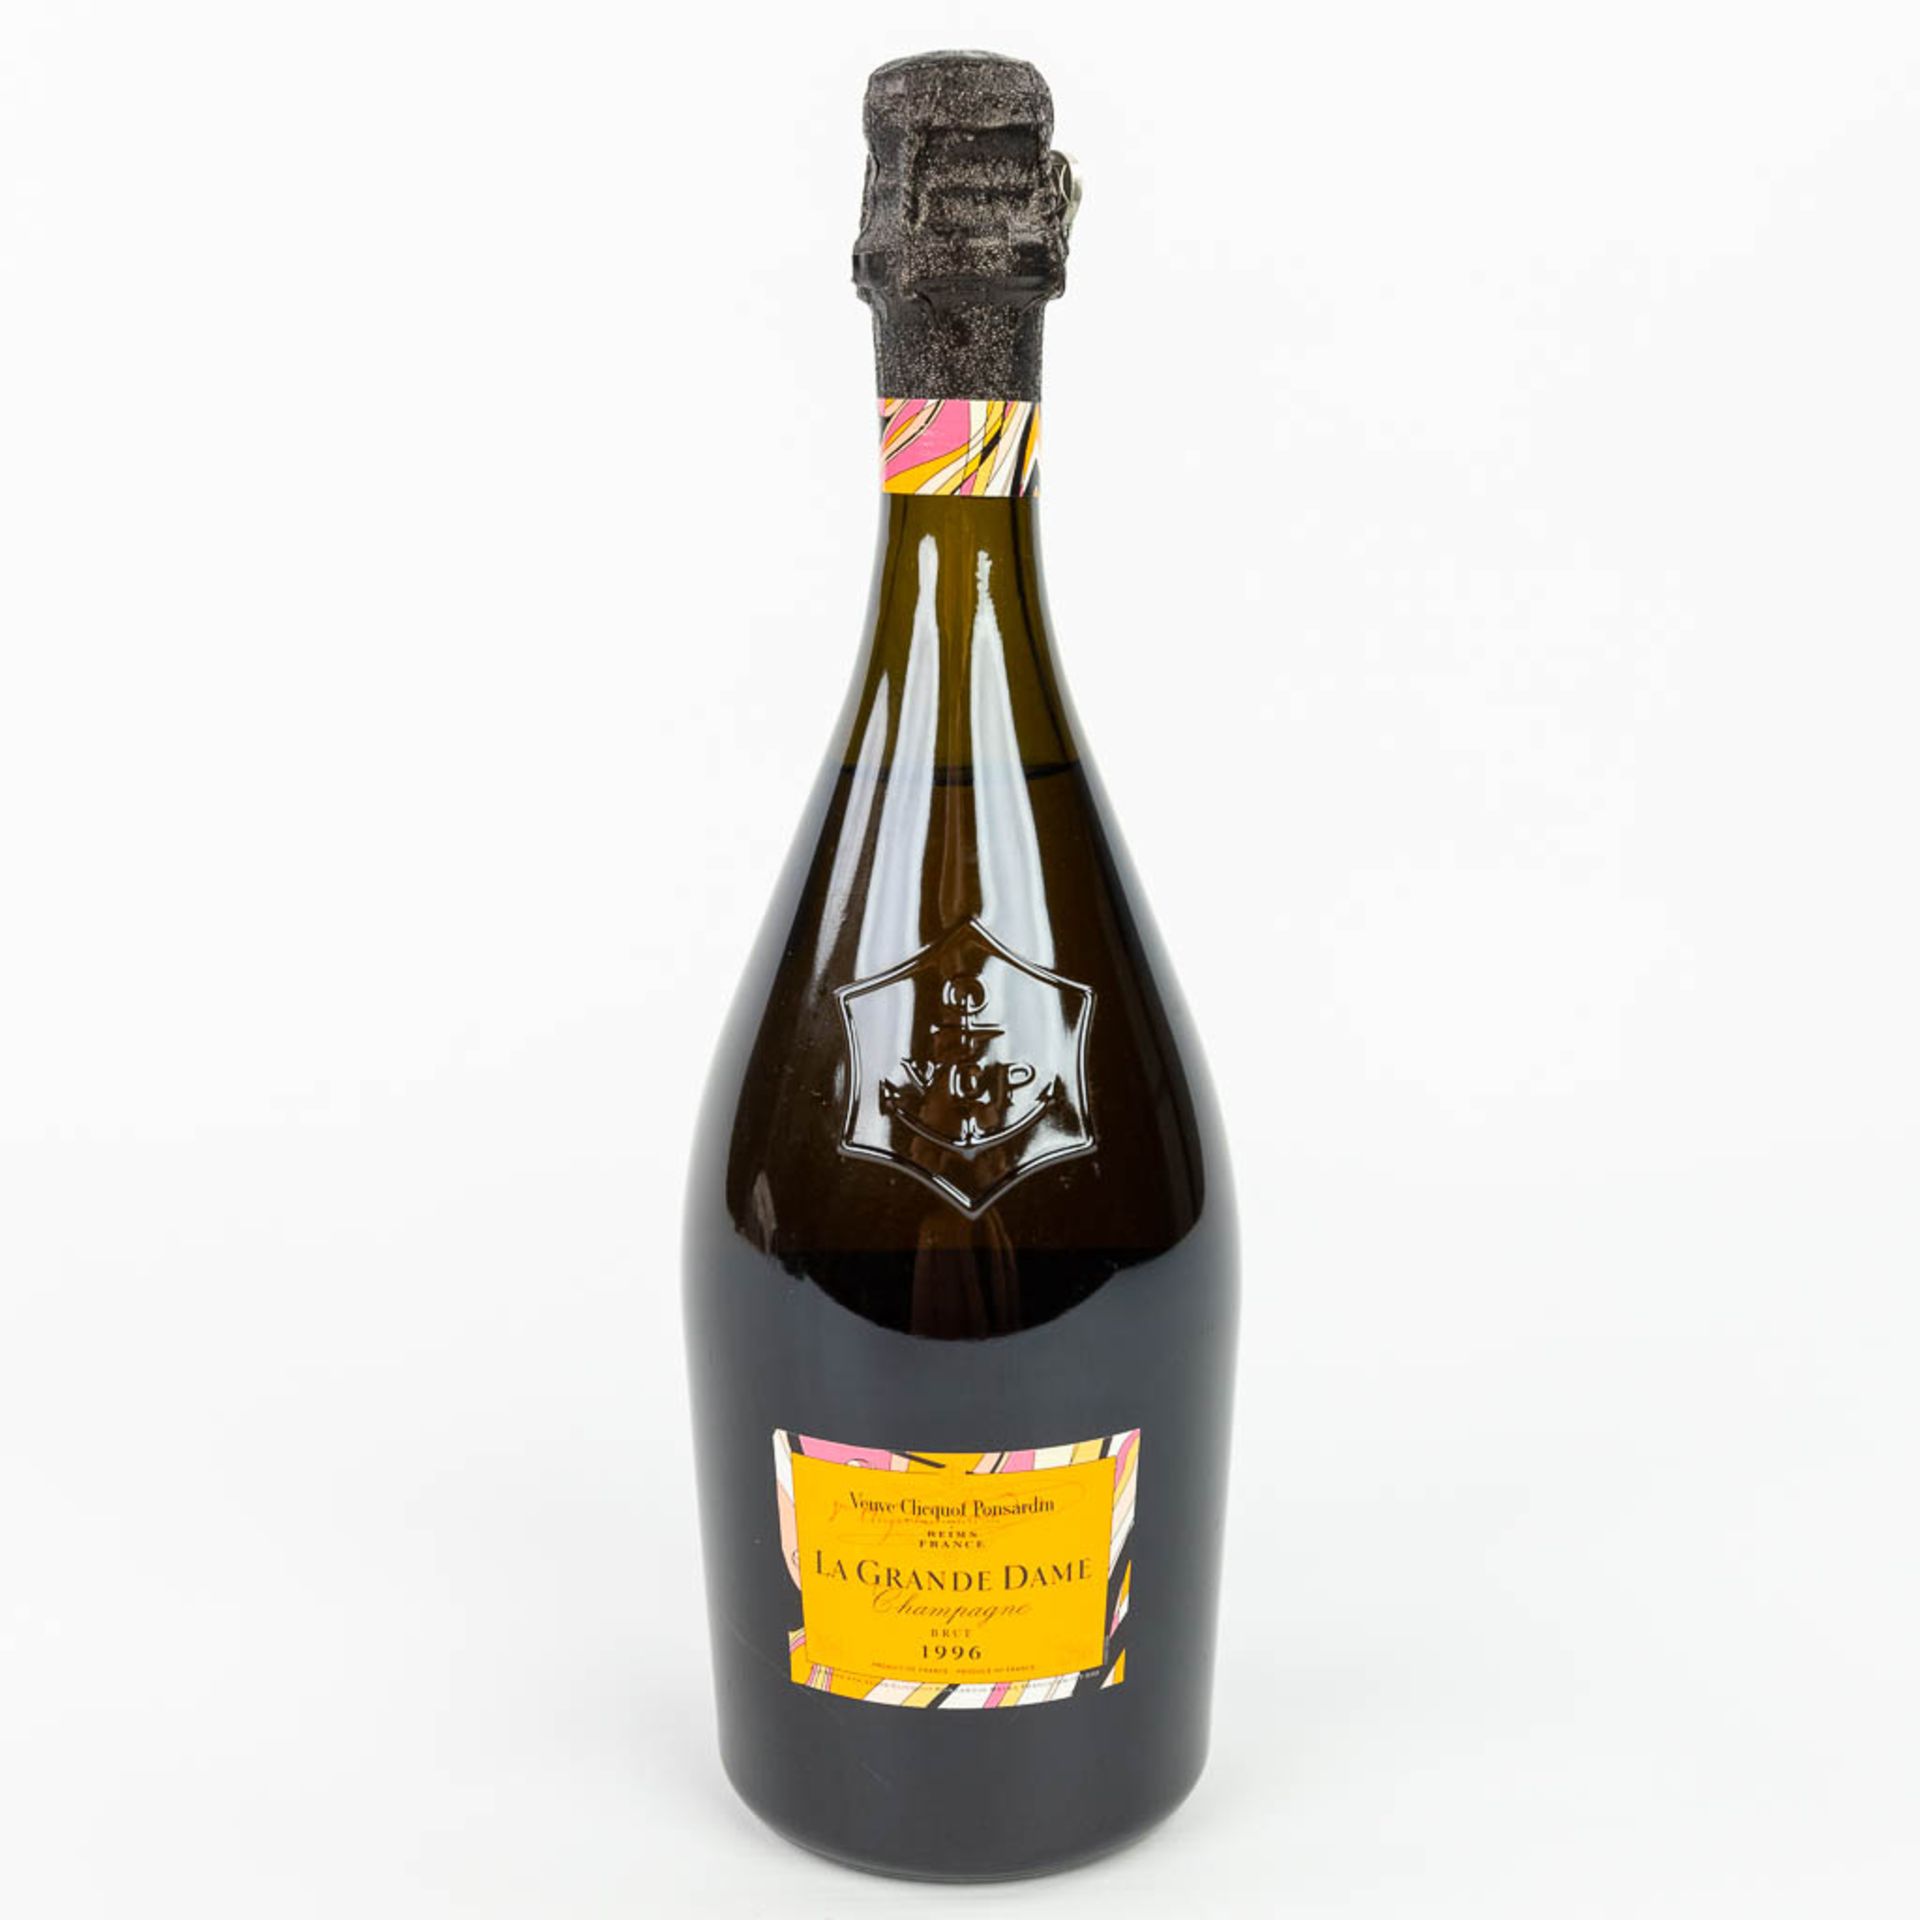 A bottle of Veuve Clicquot Ponsardin 1996 'La Grande Dame' limited edition by Emilio Pucci. - Bild 2 aus 14